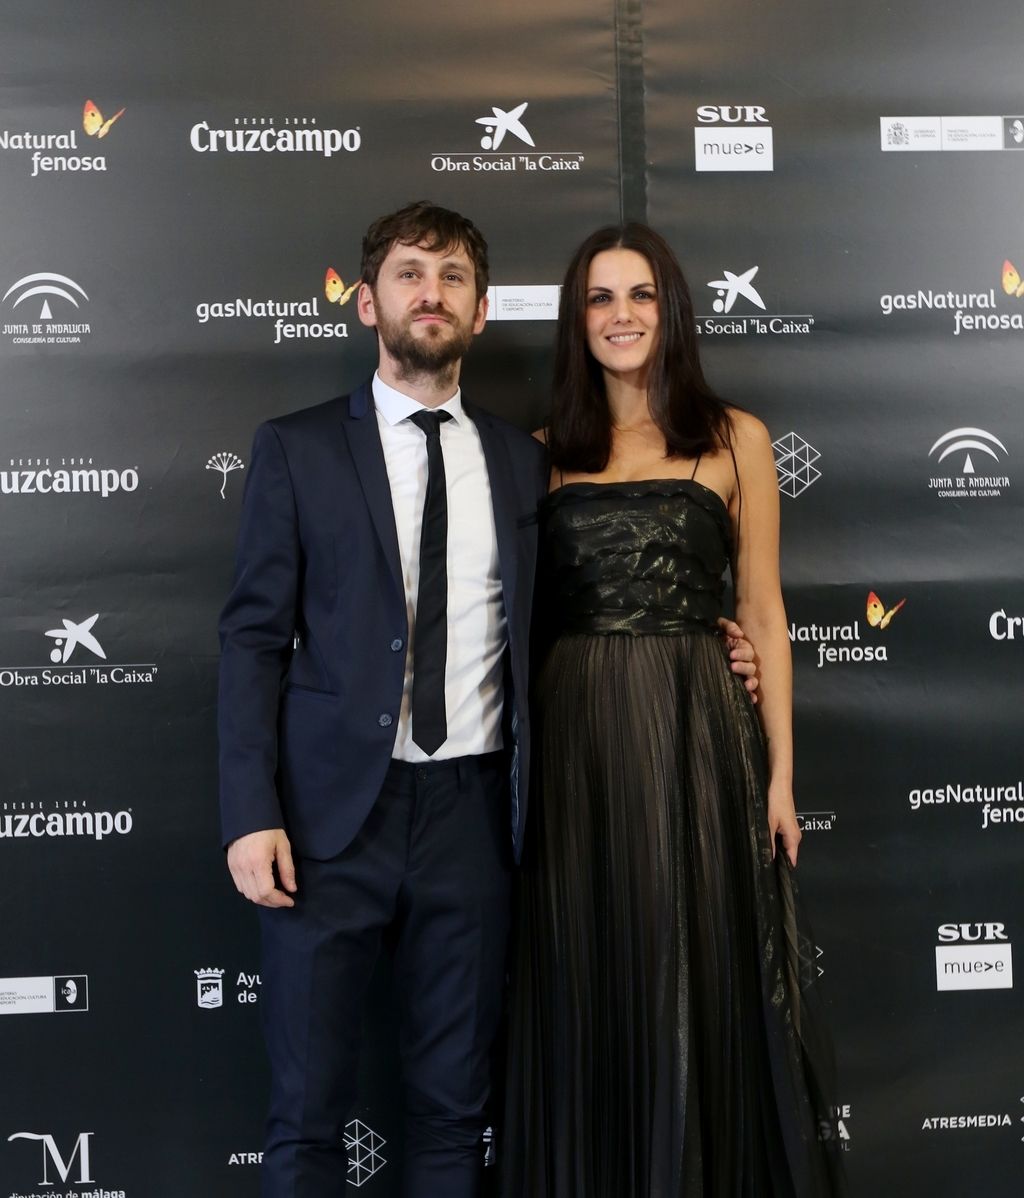 La alfombra roja de la gala de inauguración de El Festival de Málaga, en imágenes